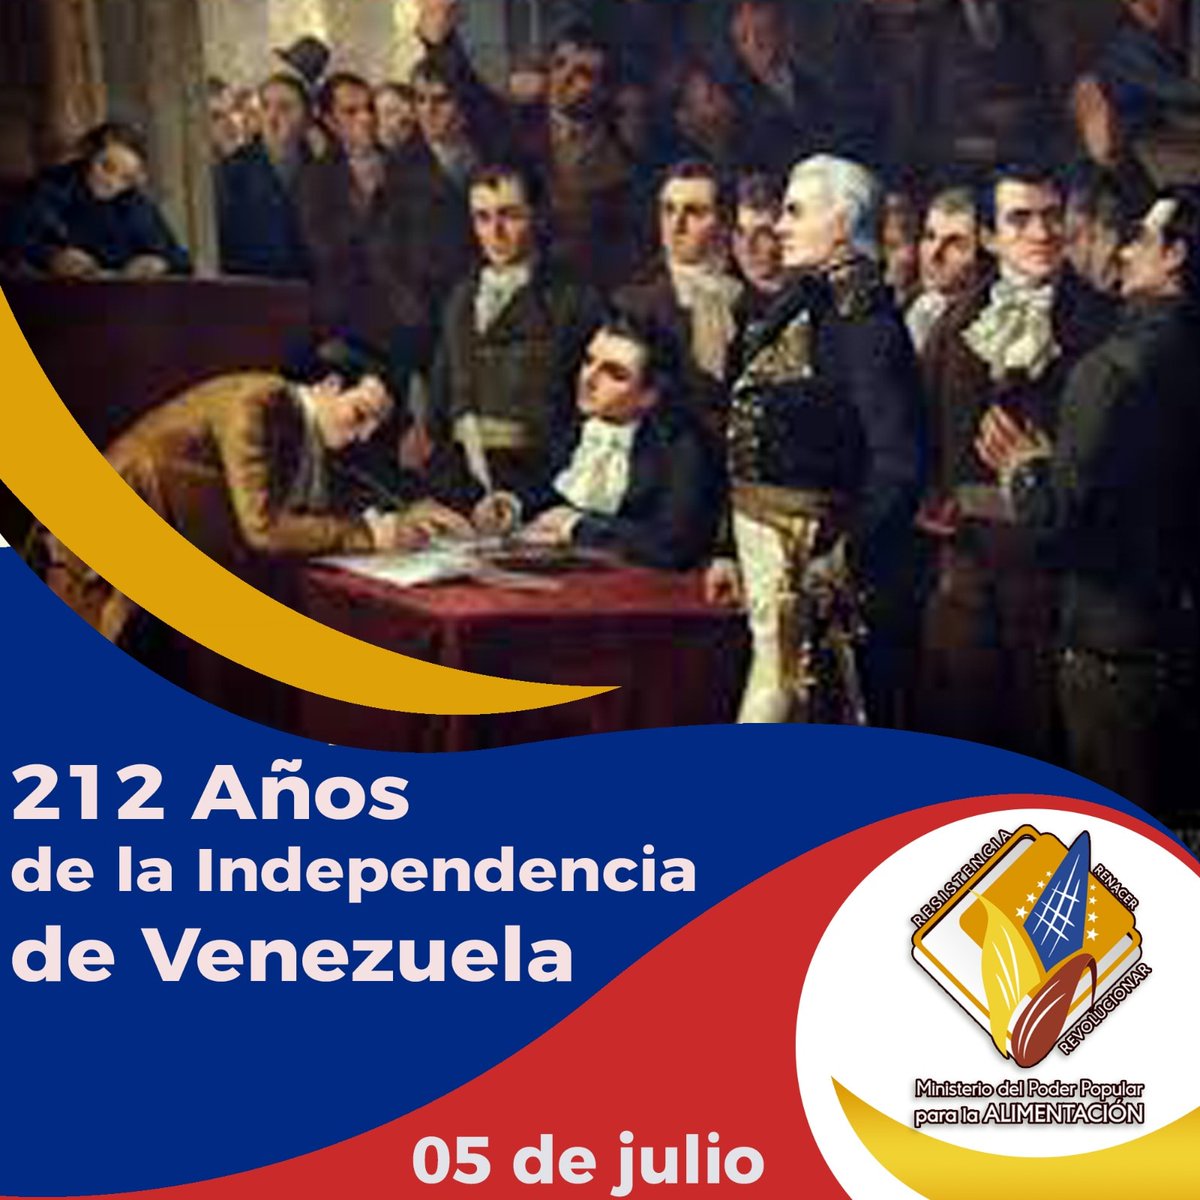 212 Años de la Independencia de Venezuela
#05Julio
#AlimentarEsVencer
#IndependenciaDeLaPatria